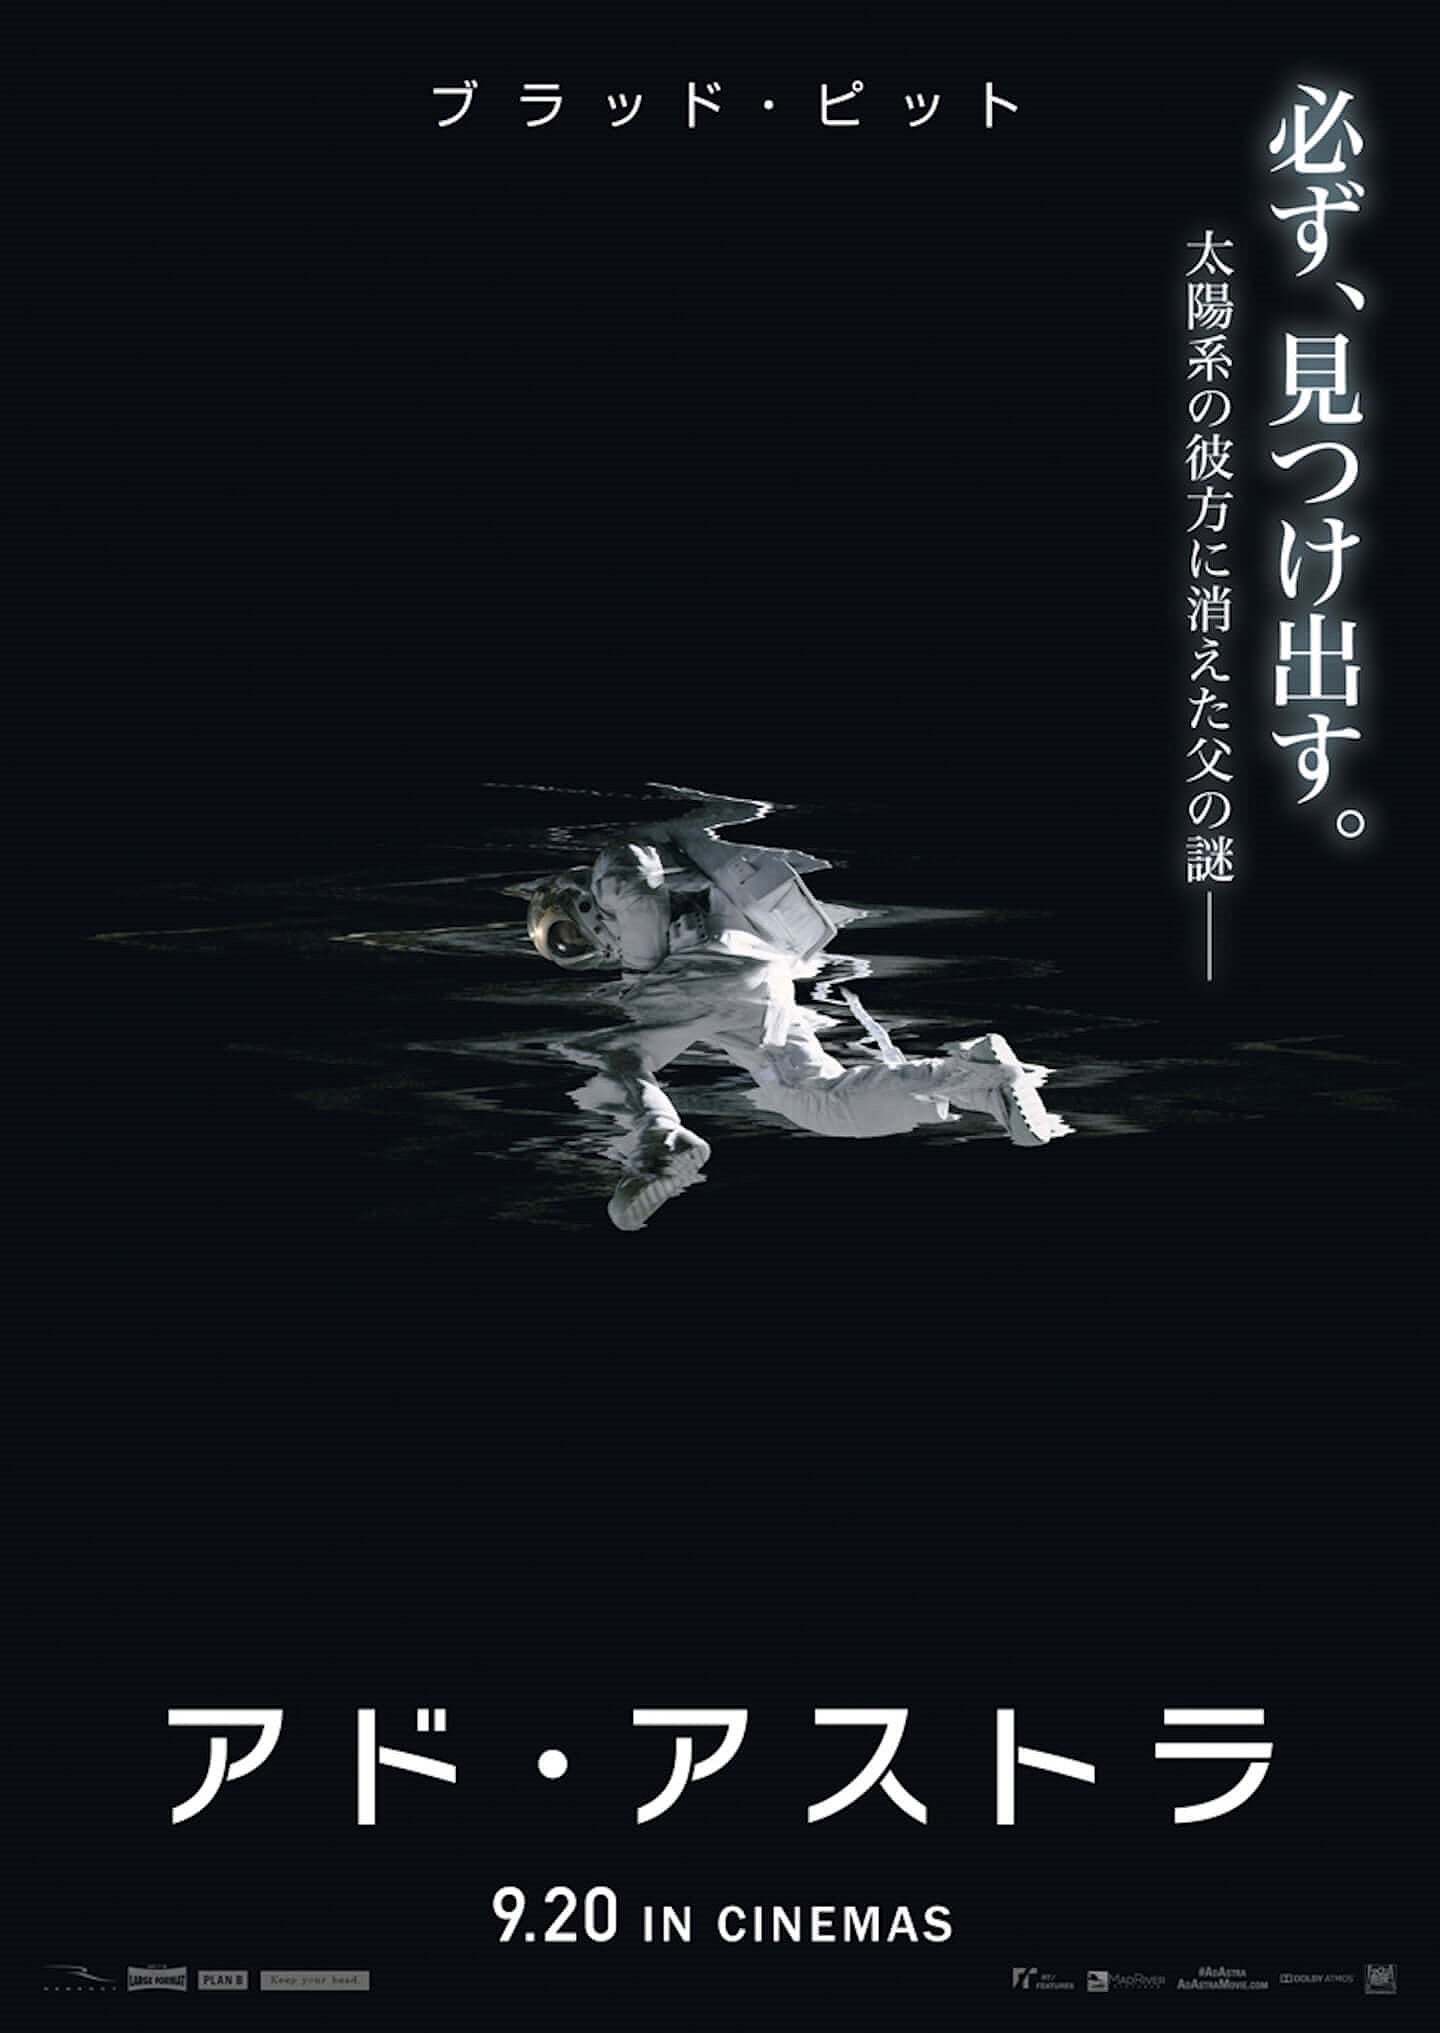 ブラッド・ピット主演のSFスリラー『アド・アストラ』の日本公開は9月 